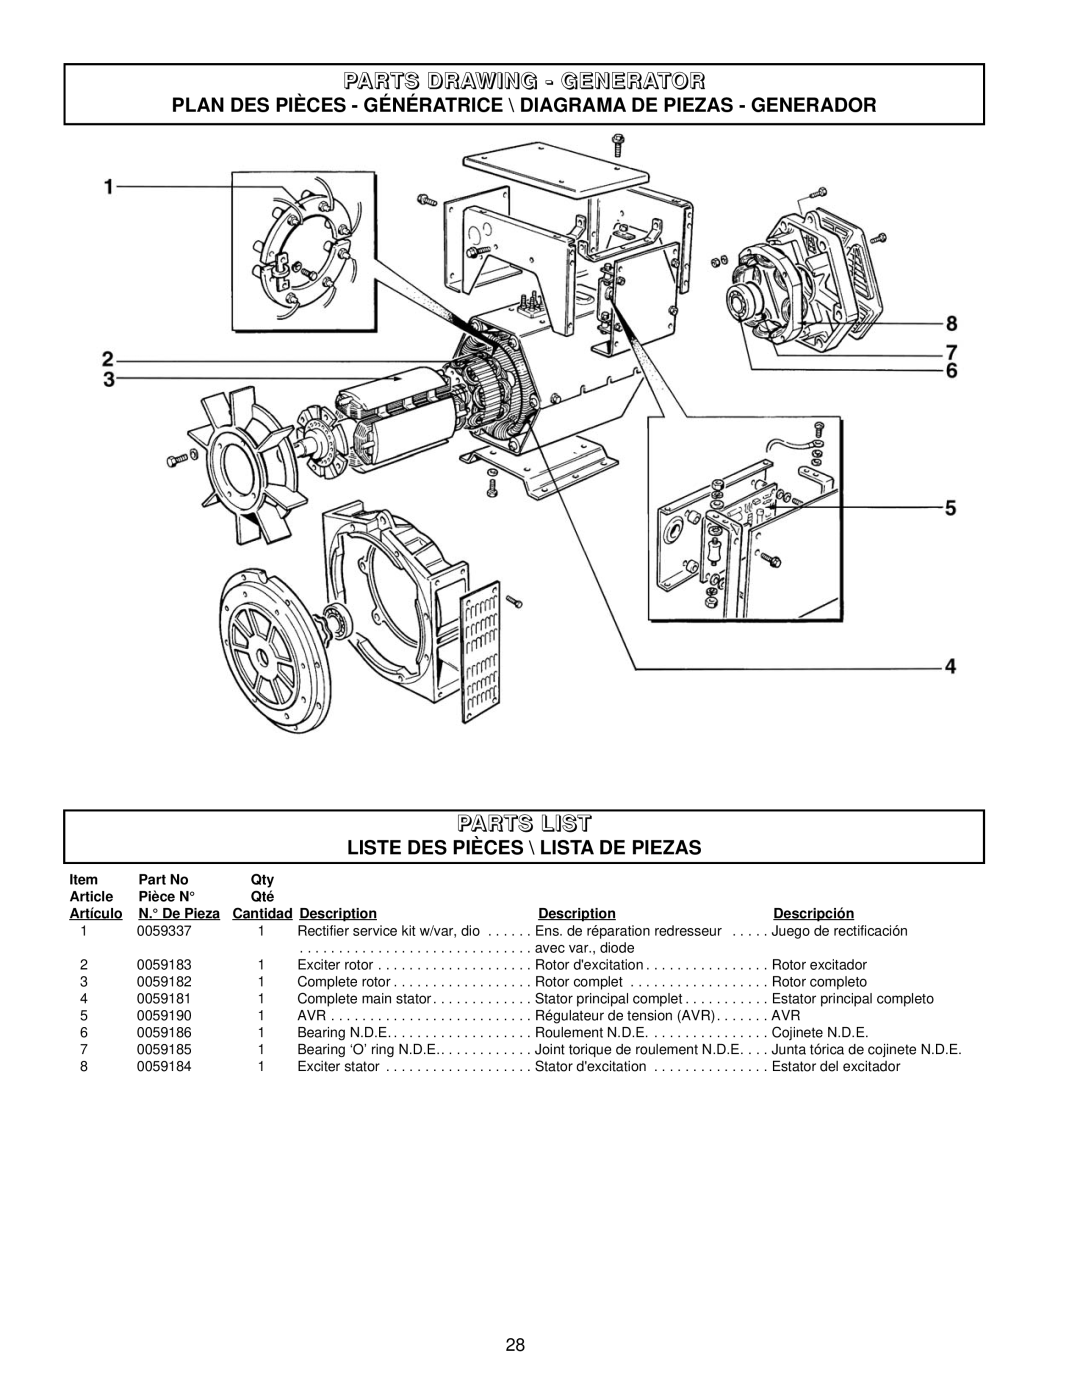 Coleman PM402511 Parts Drawing - Generator, Parts List, Plan Des Pièces - Génératrice \ Diagrama De Piezas - Generador 